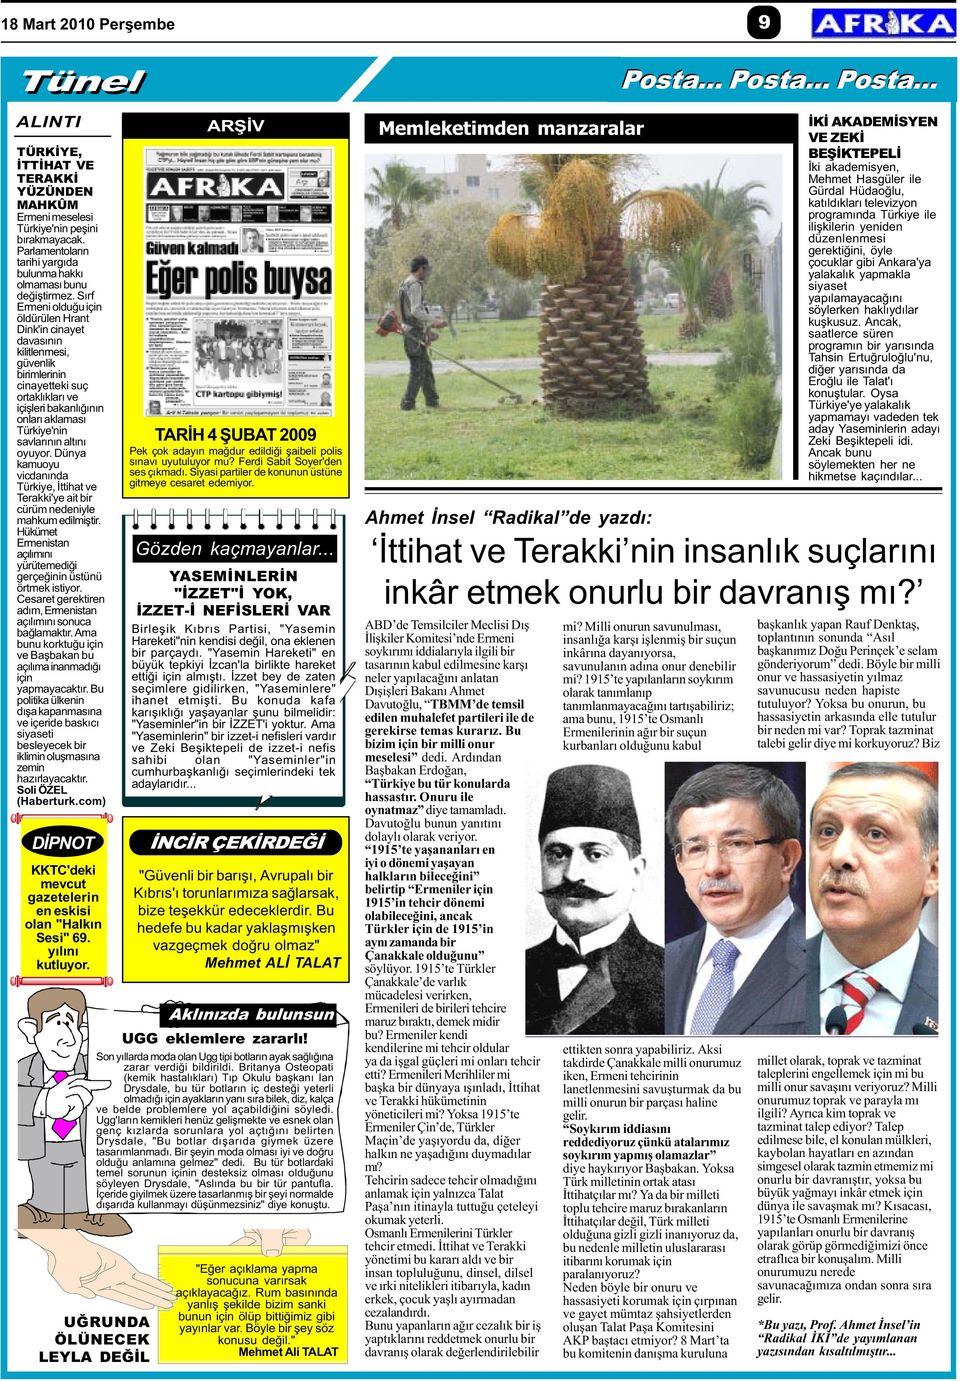 Sýrf Ermeni olduðu için öldürülen Hrant Dink'in cinayet davasýnýn kilitlenmesi, güvenlik birimlerinin cinayetteki suç ortaklýklarý ve içiþleri bakanlýðýnýn onlarý aklamasý Türkiye'nin savlarýnýn